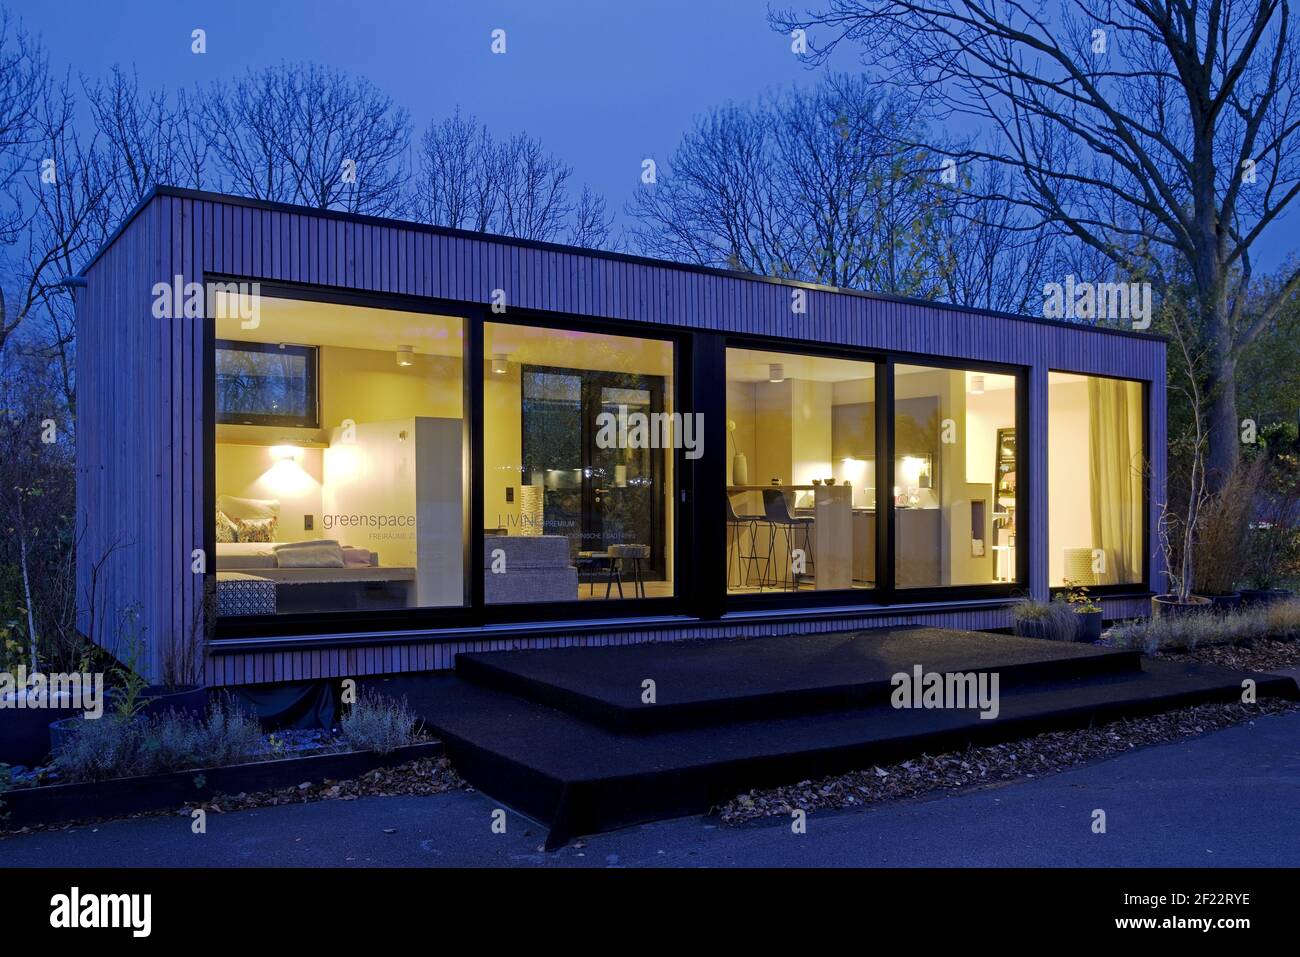 Petite maison, vivant sur 40 mètres carrés, maison d'exposition, Dortmund, Allemagne, Europe Banque D'Images